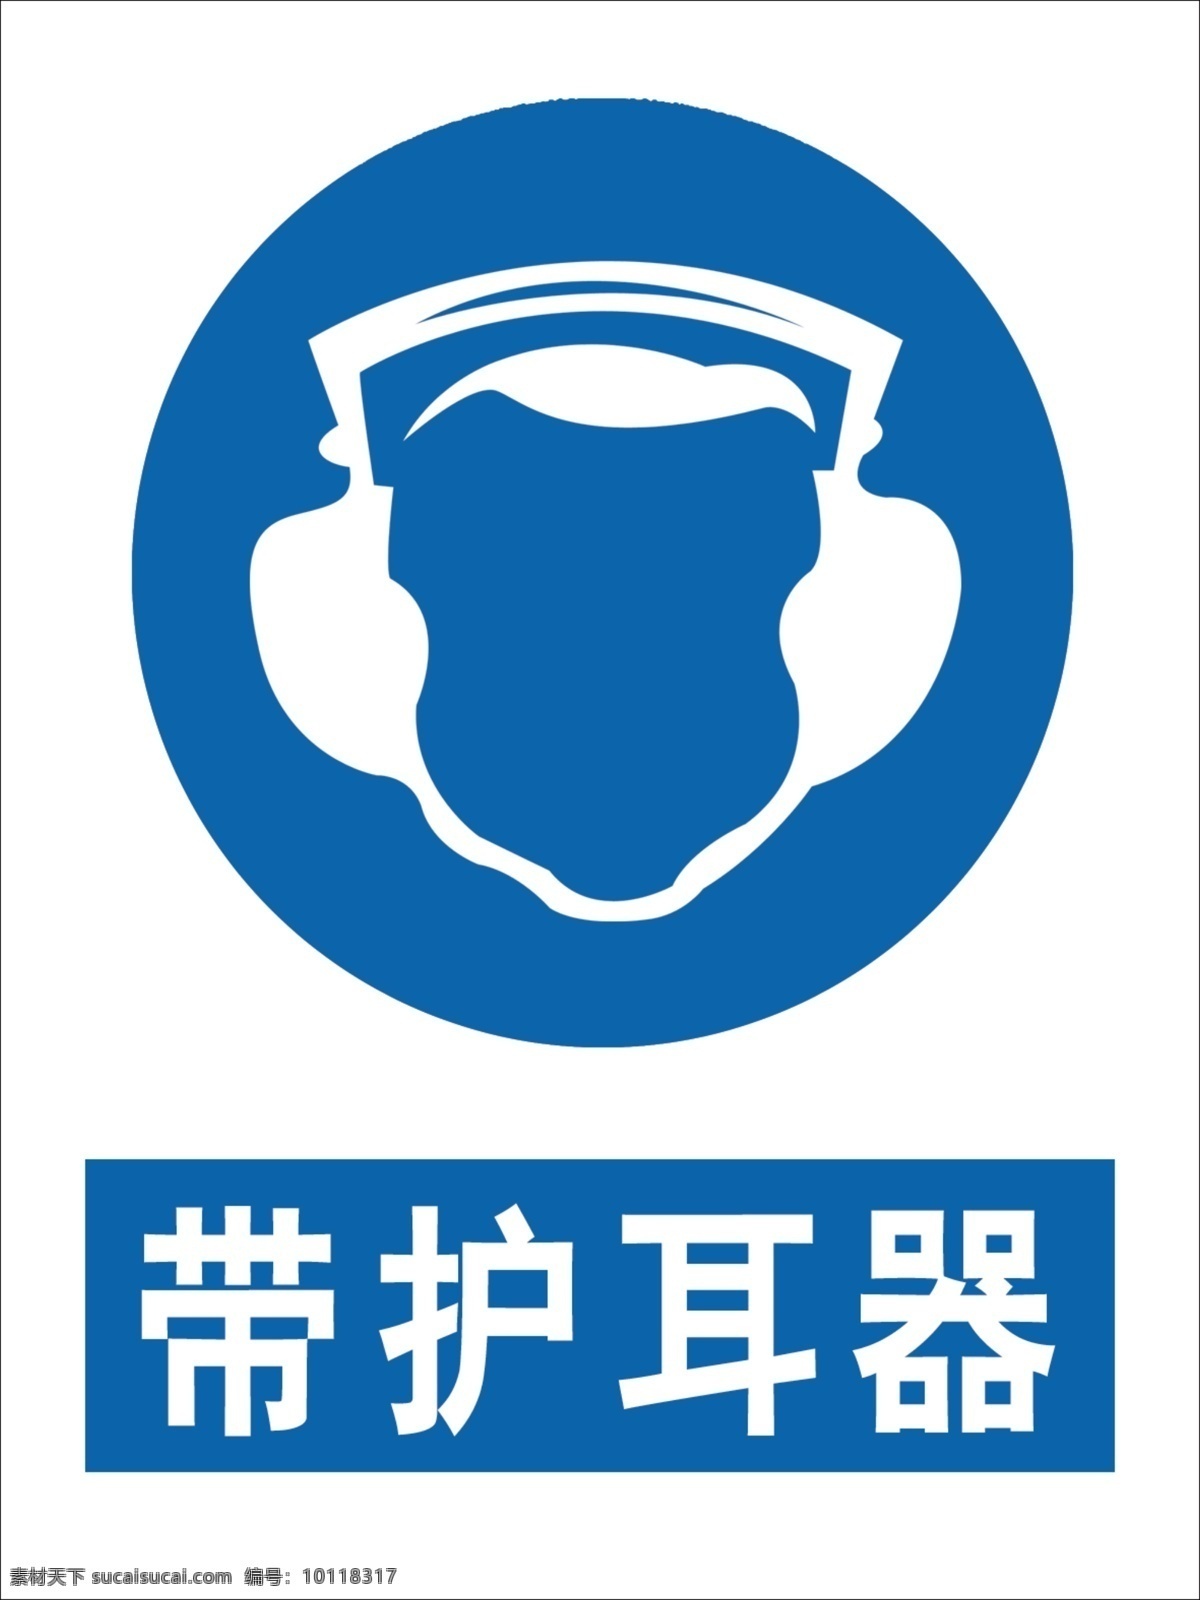 戴护耳器图片 戴护耳器 带护耳器 护耳器 国标 安全标识 标志图标 公共标识标志